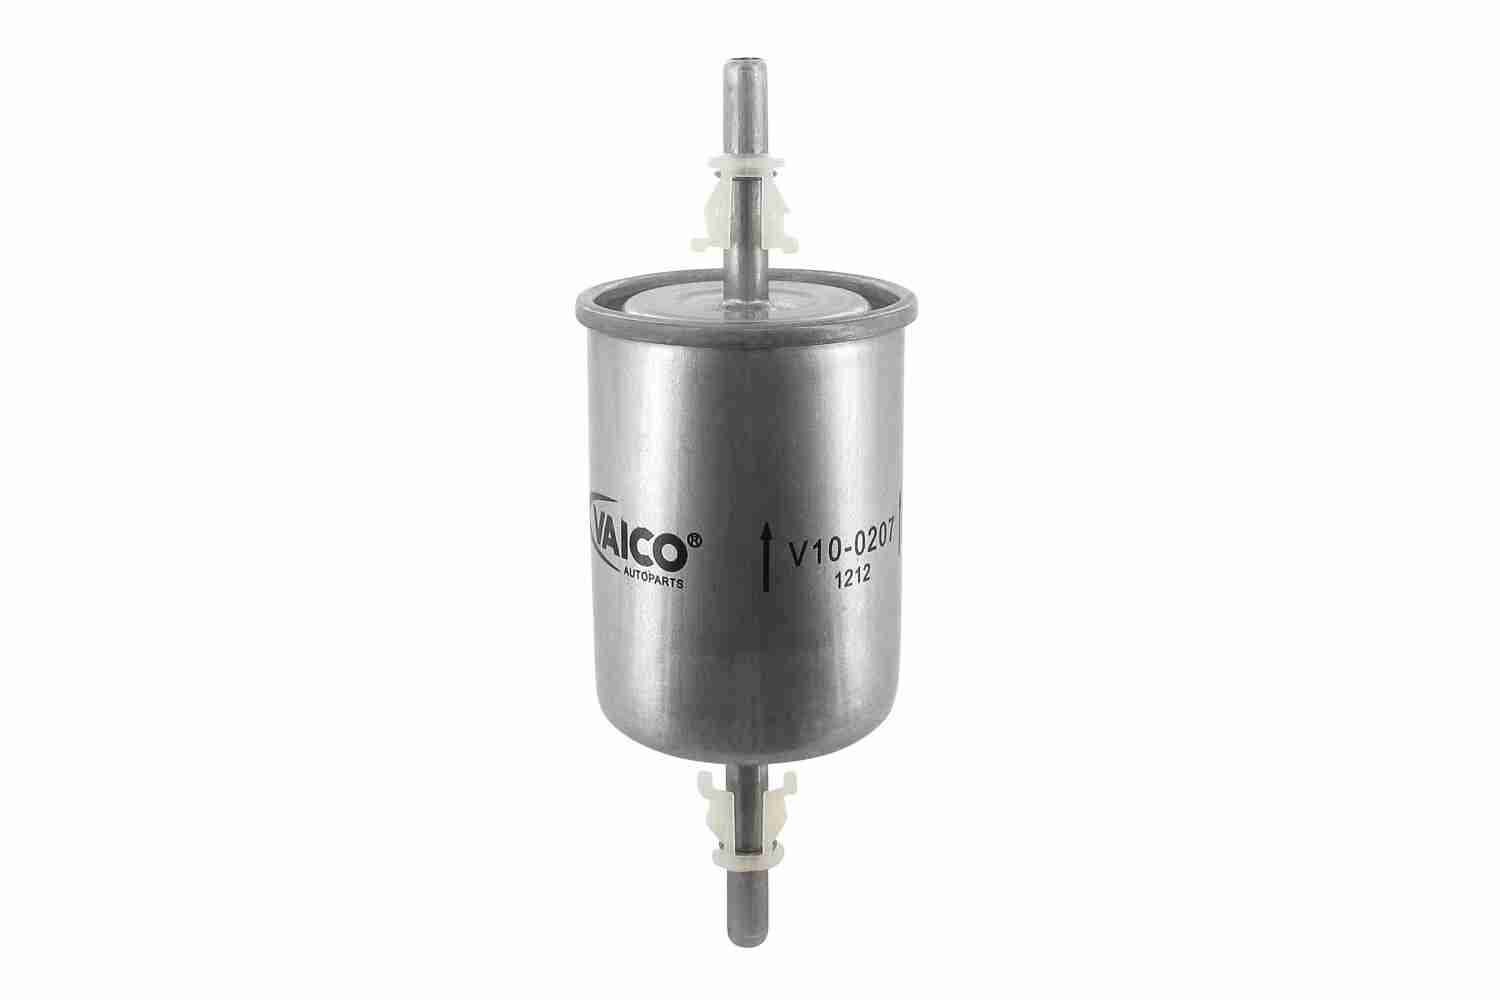 VAICO V10-0207 palivovy filtr